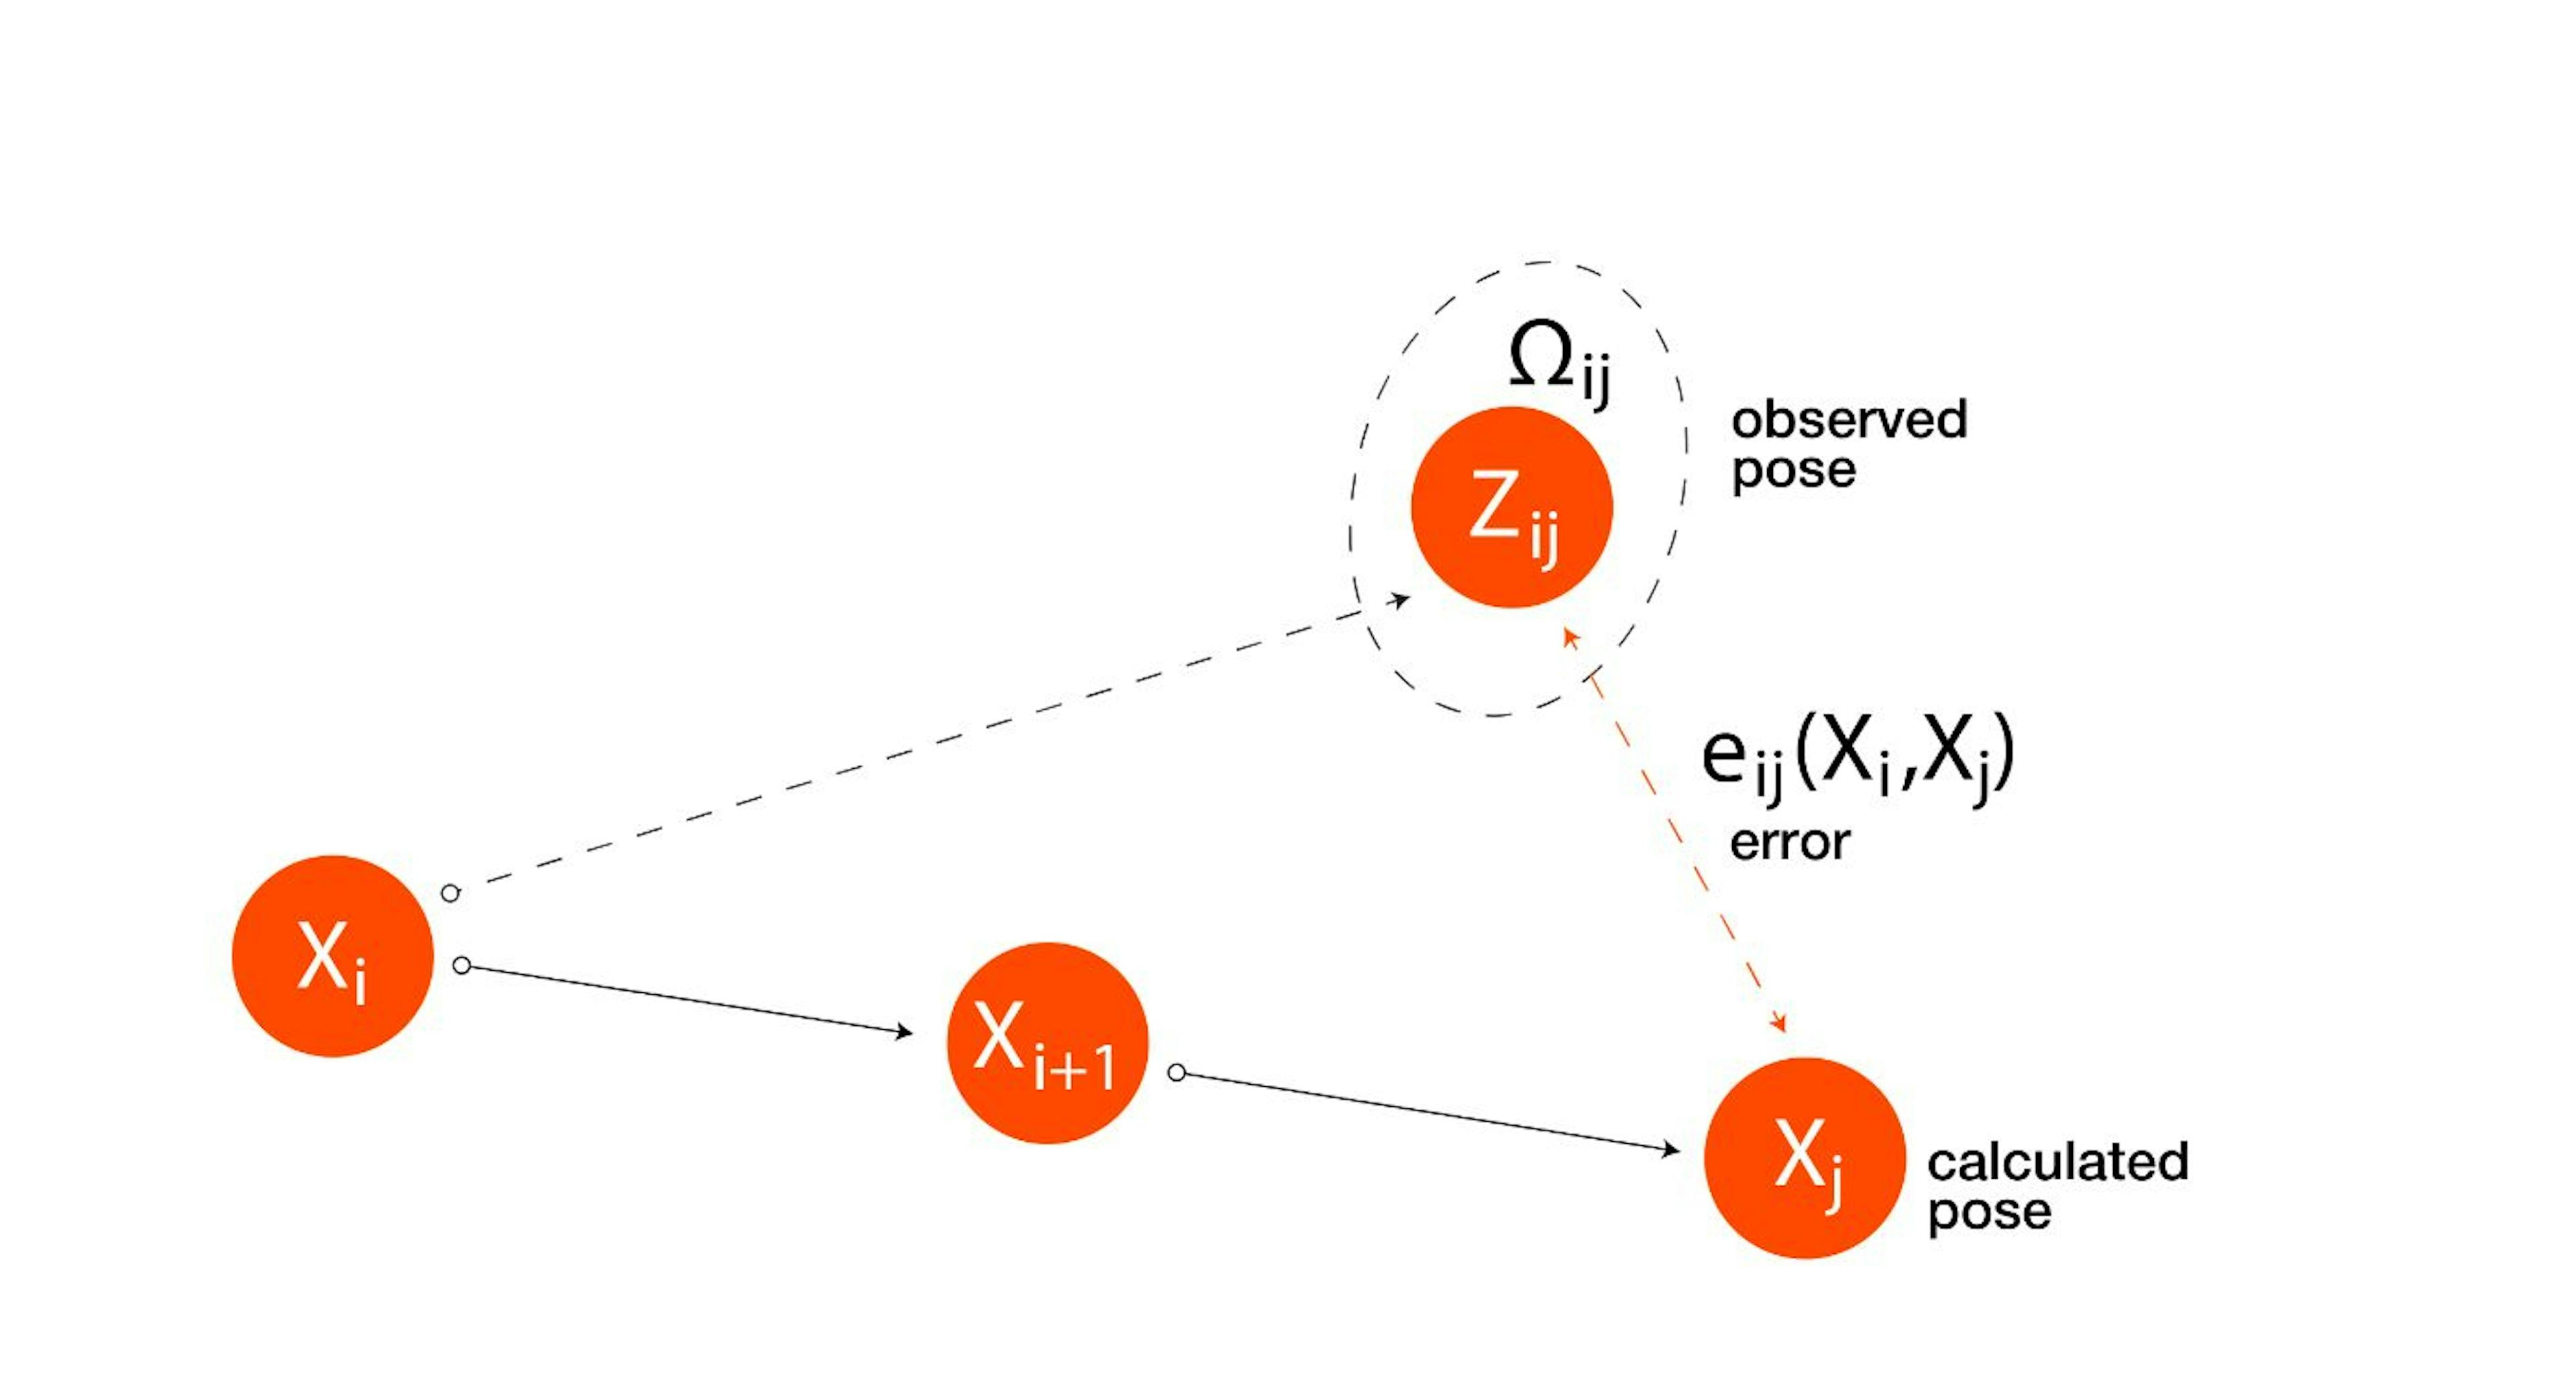 Figure 4. The error in encoder’s measurements